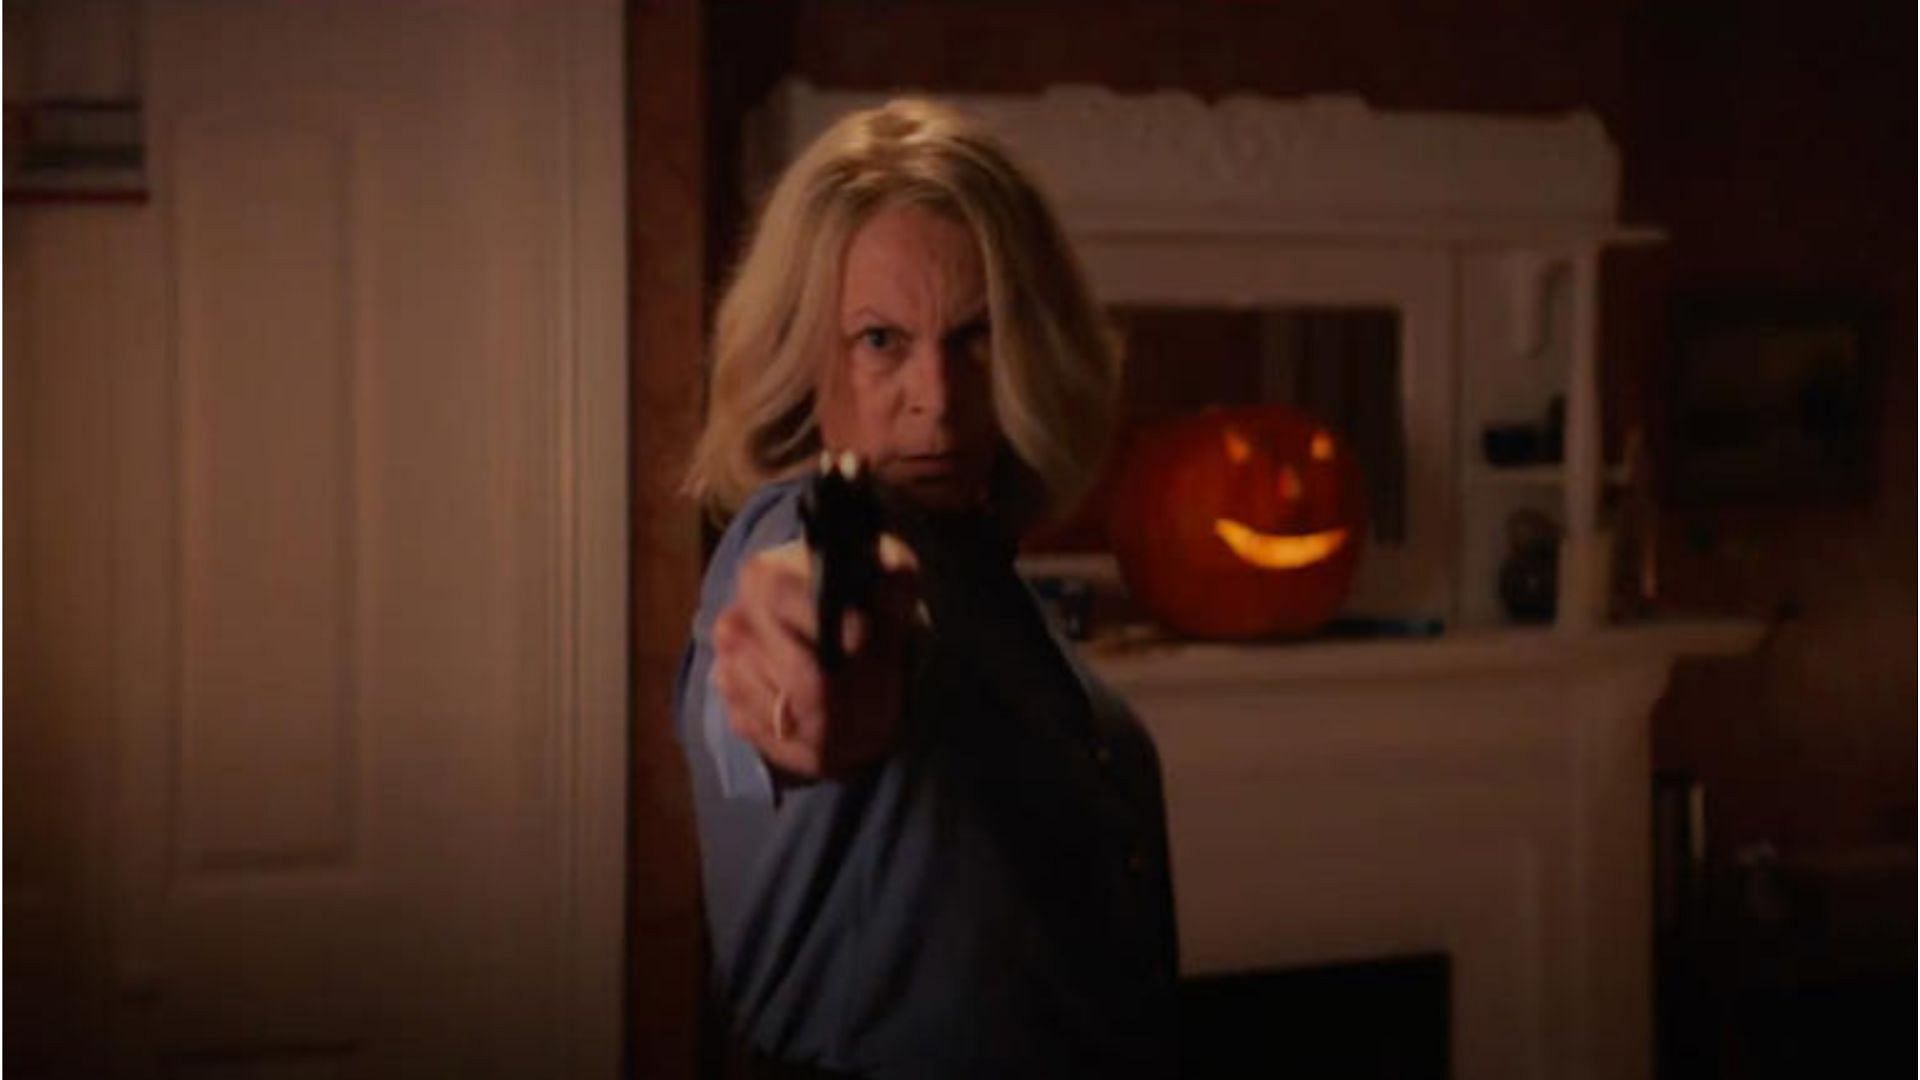 Jamie Lee Curtis in Halloween Ends (Image via MSN)